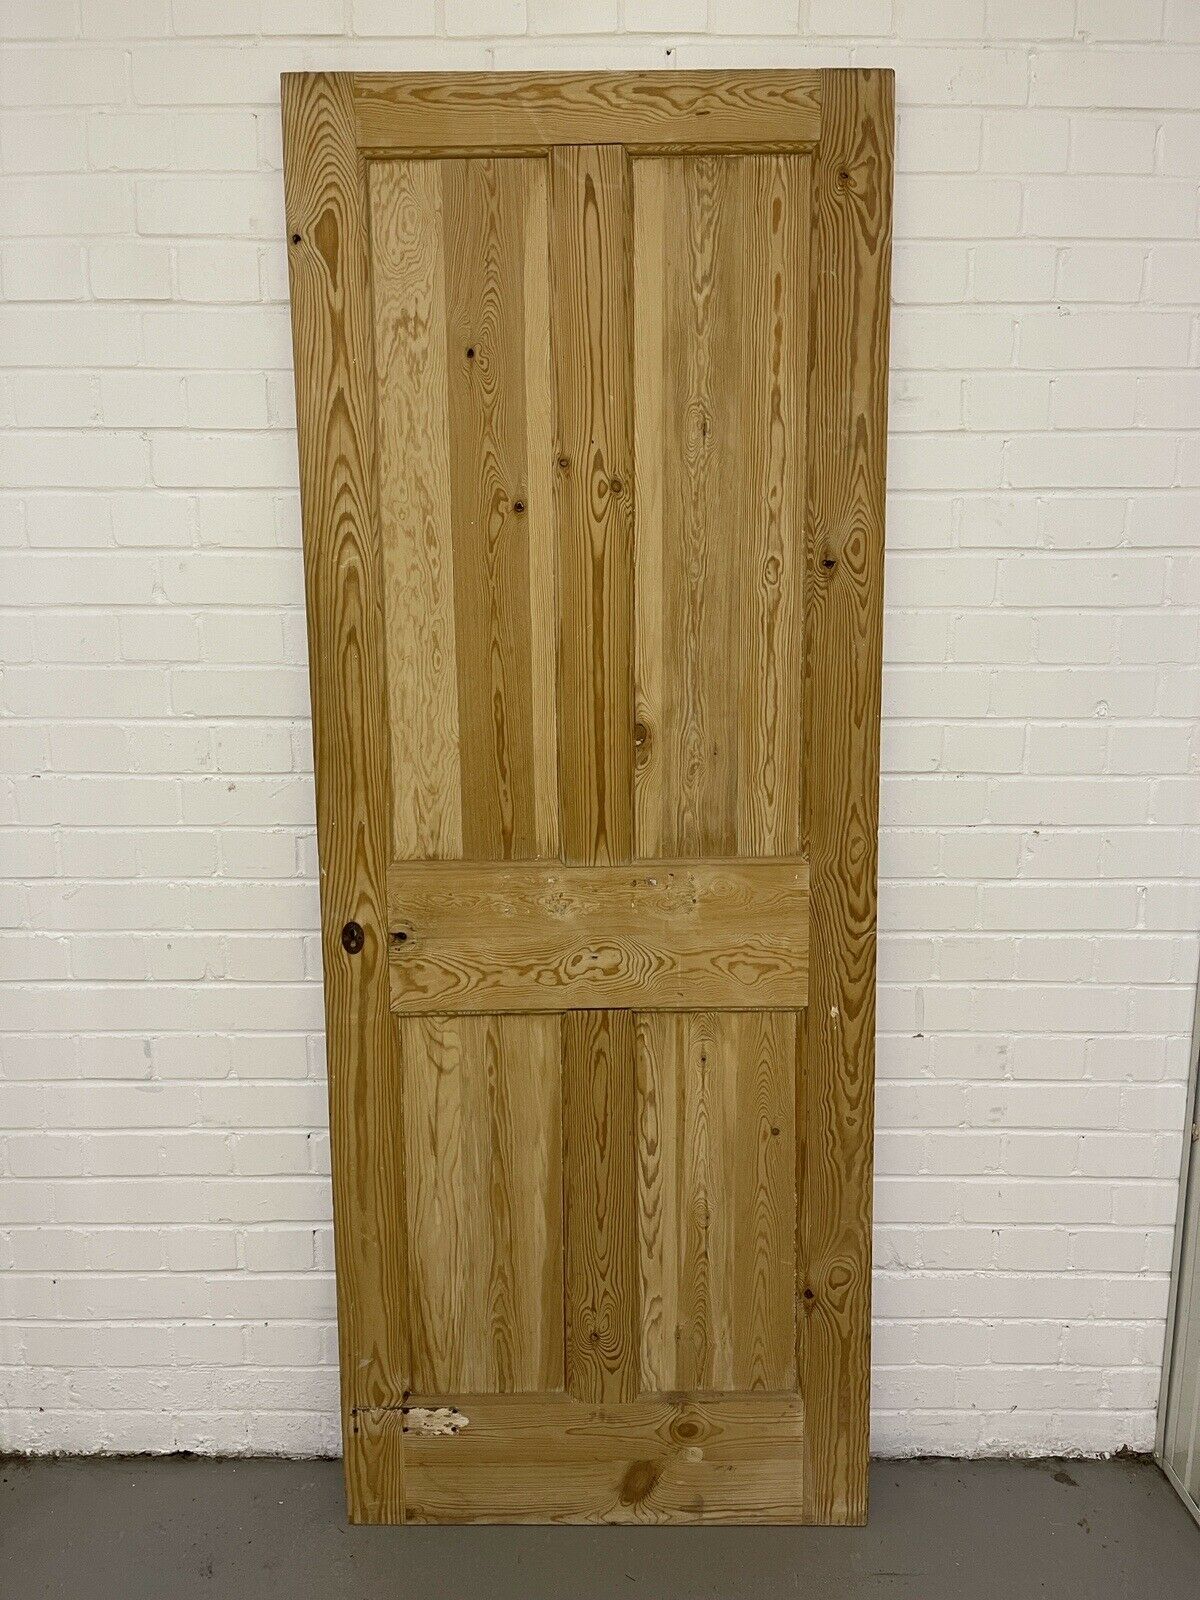 Original Vintage Reclaimed Victorian Pine Internal 4 panel Door 1955 x 755mm